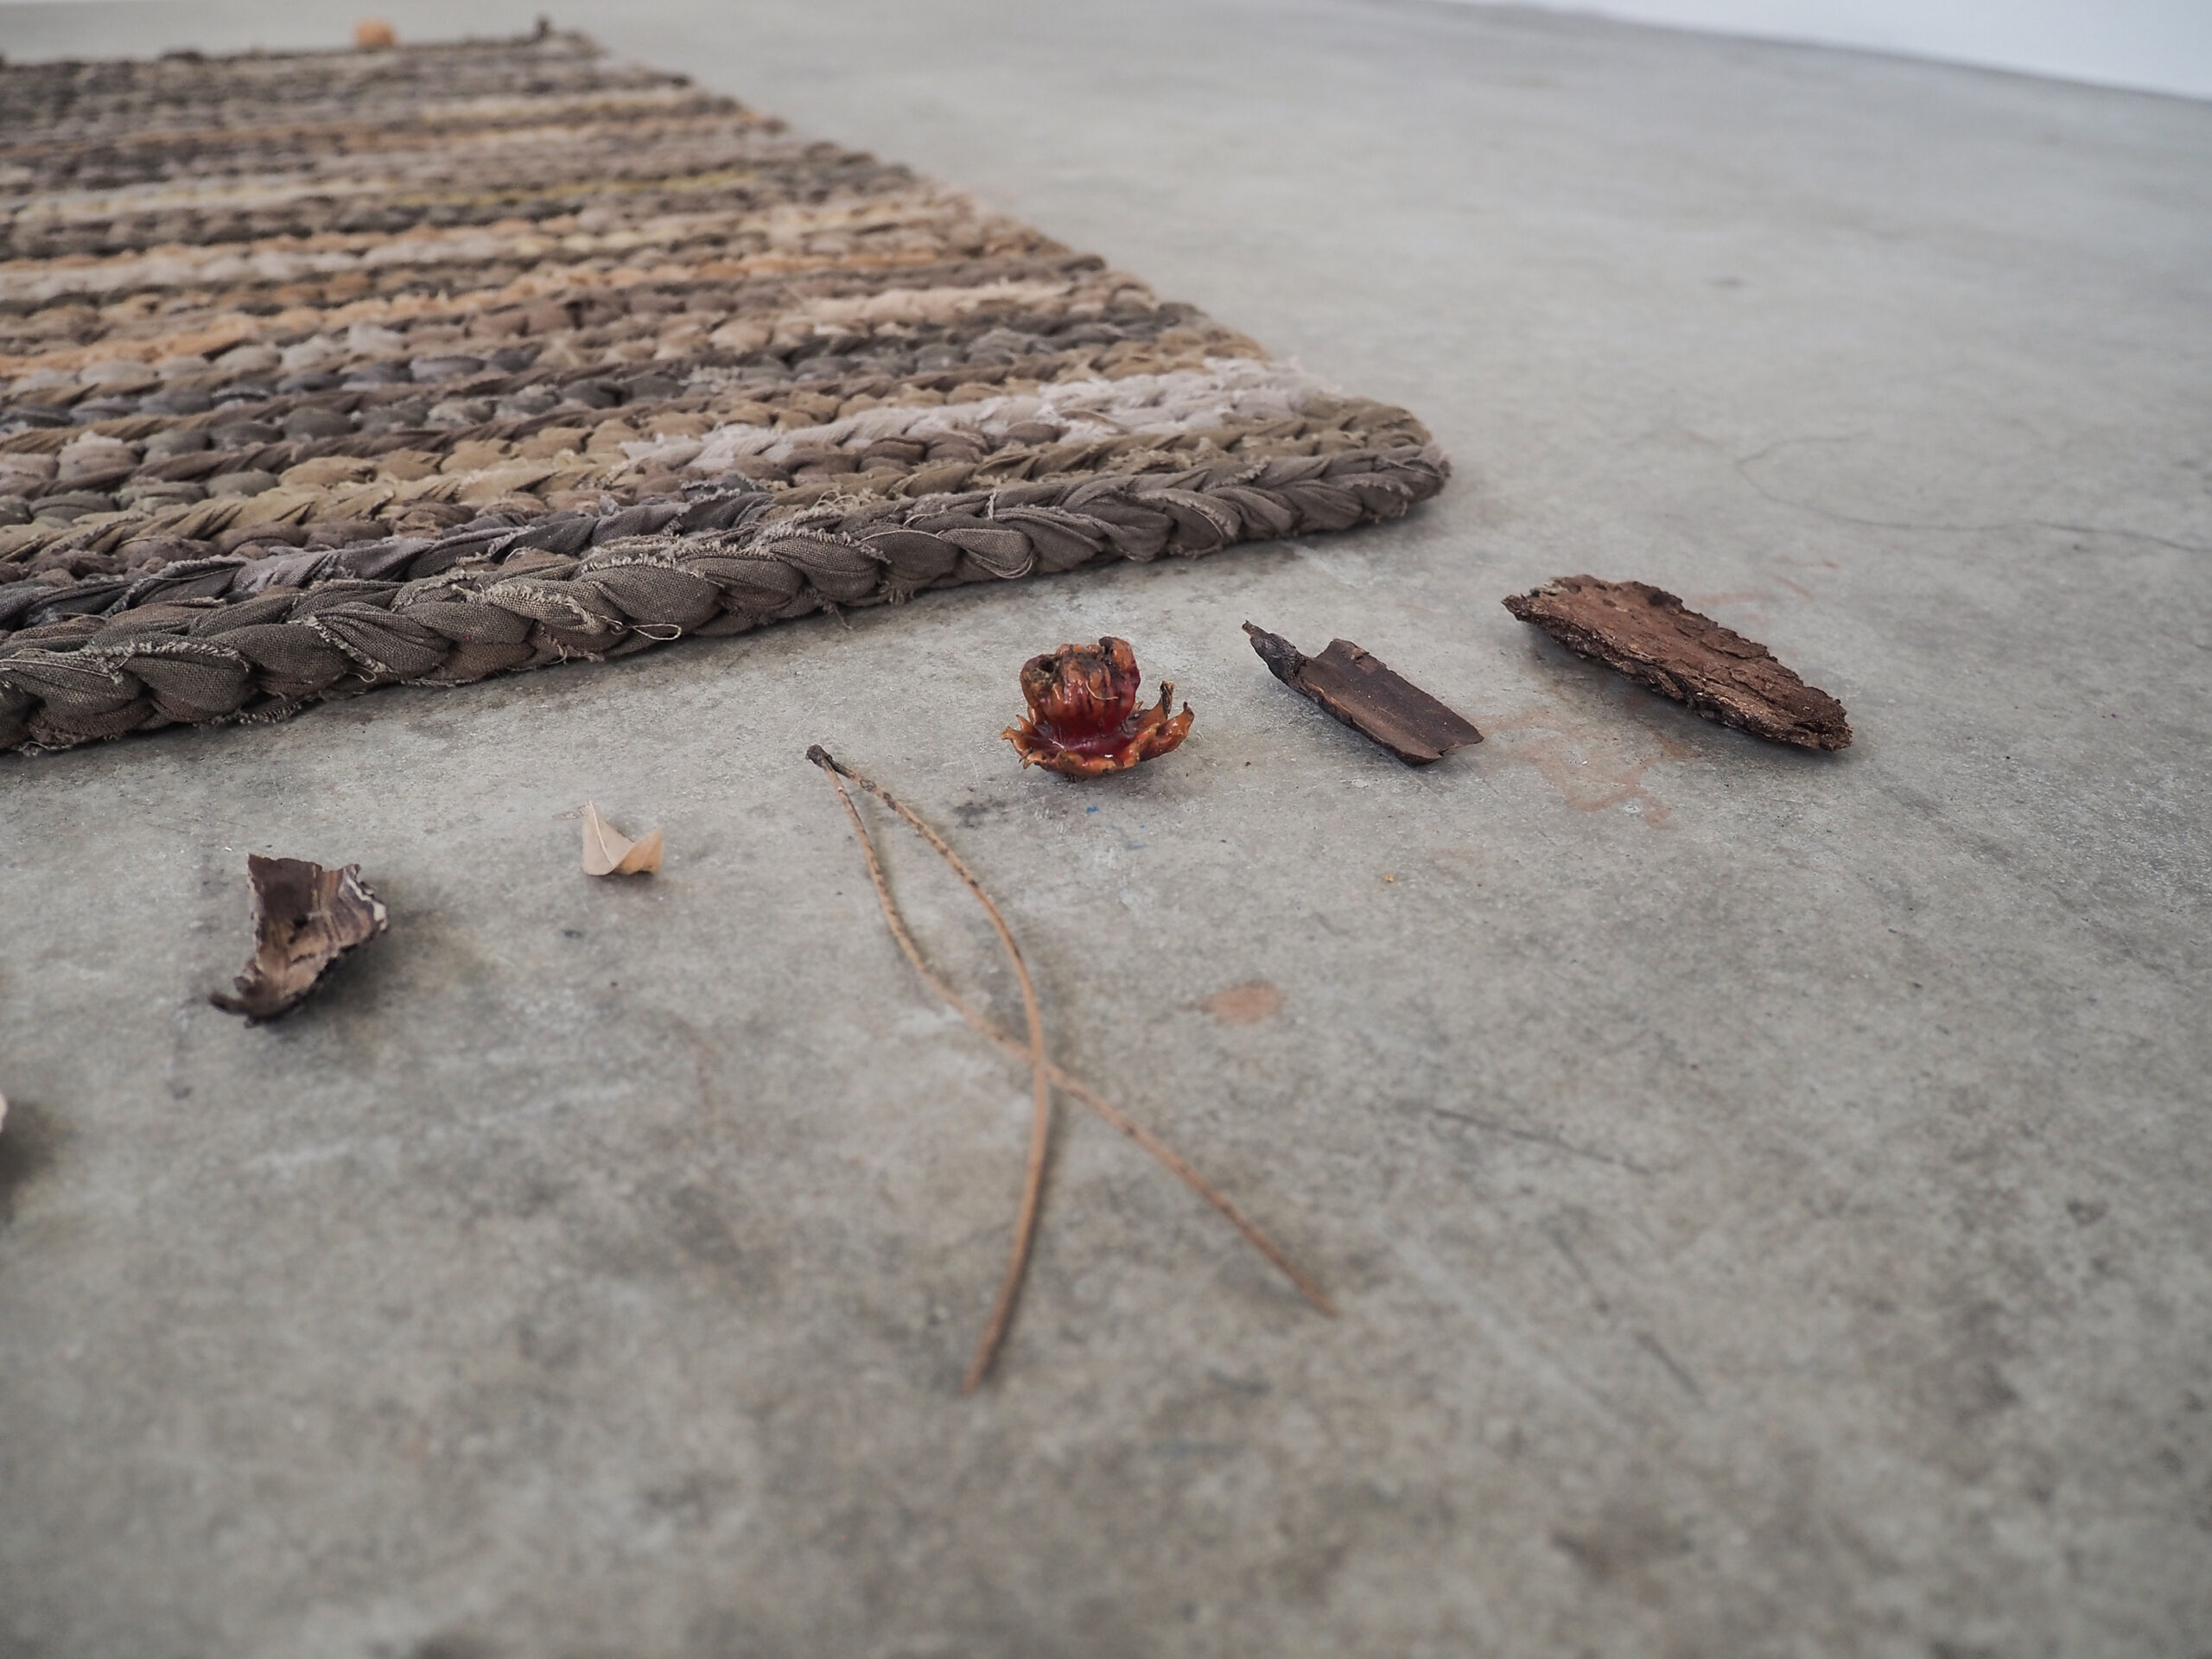 Terre, 2020, elementi vegetali raccolti, cotone tinto con estratti vegetali, terra cruda, semi, circa 112 x130 cm - Miriam Del Seppia - cortesia dell'artista